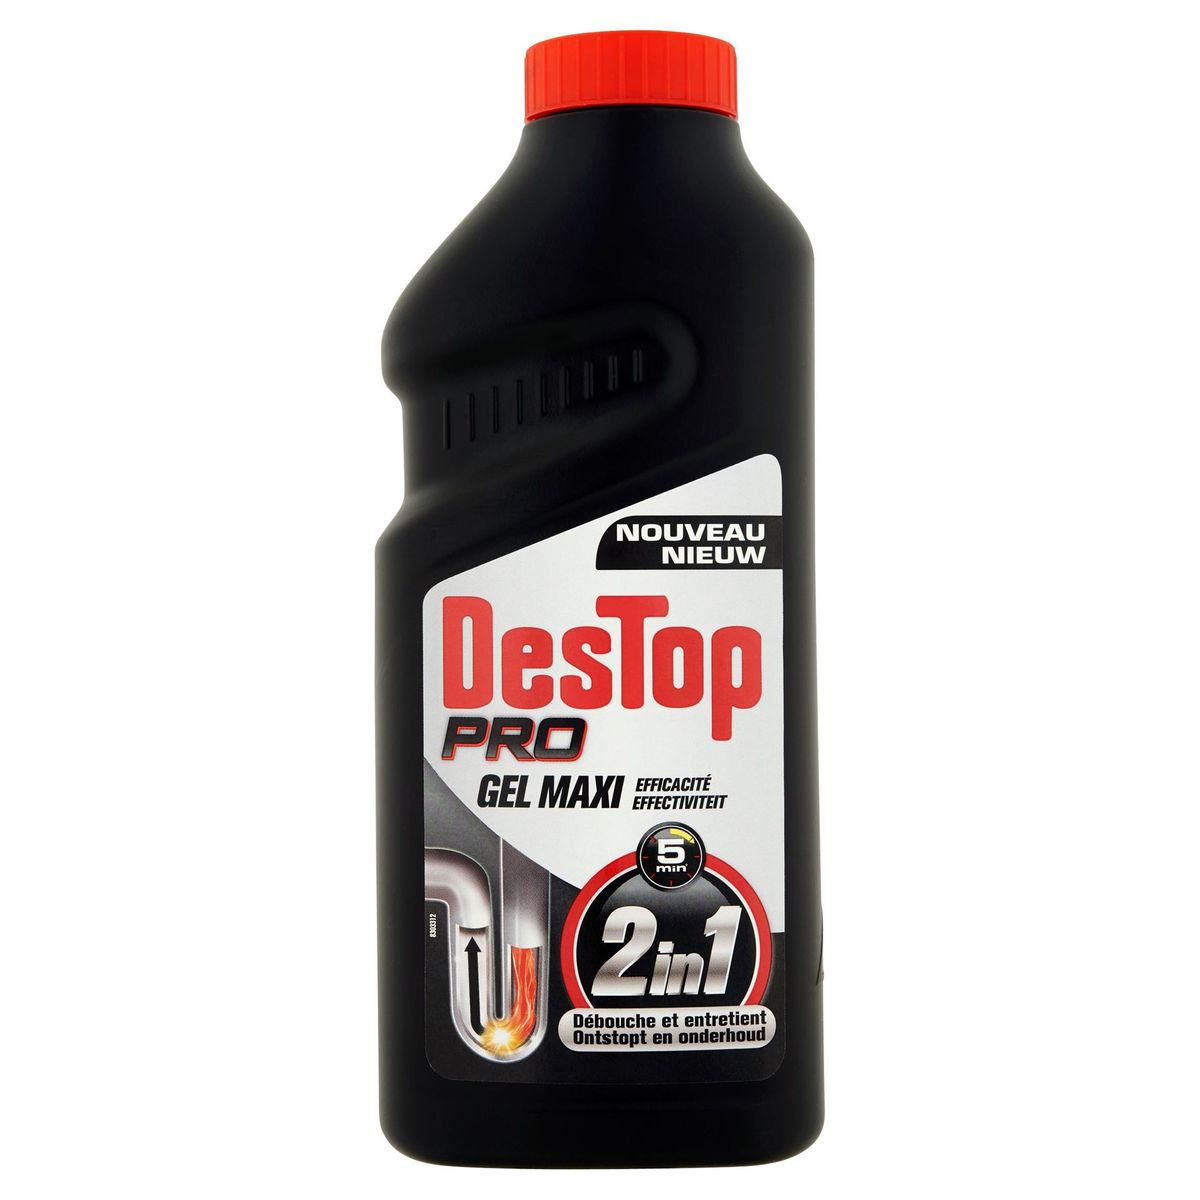 Destop Pro Gel Maxi Efficacité 500 ml